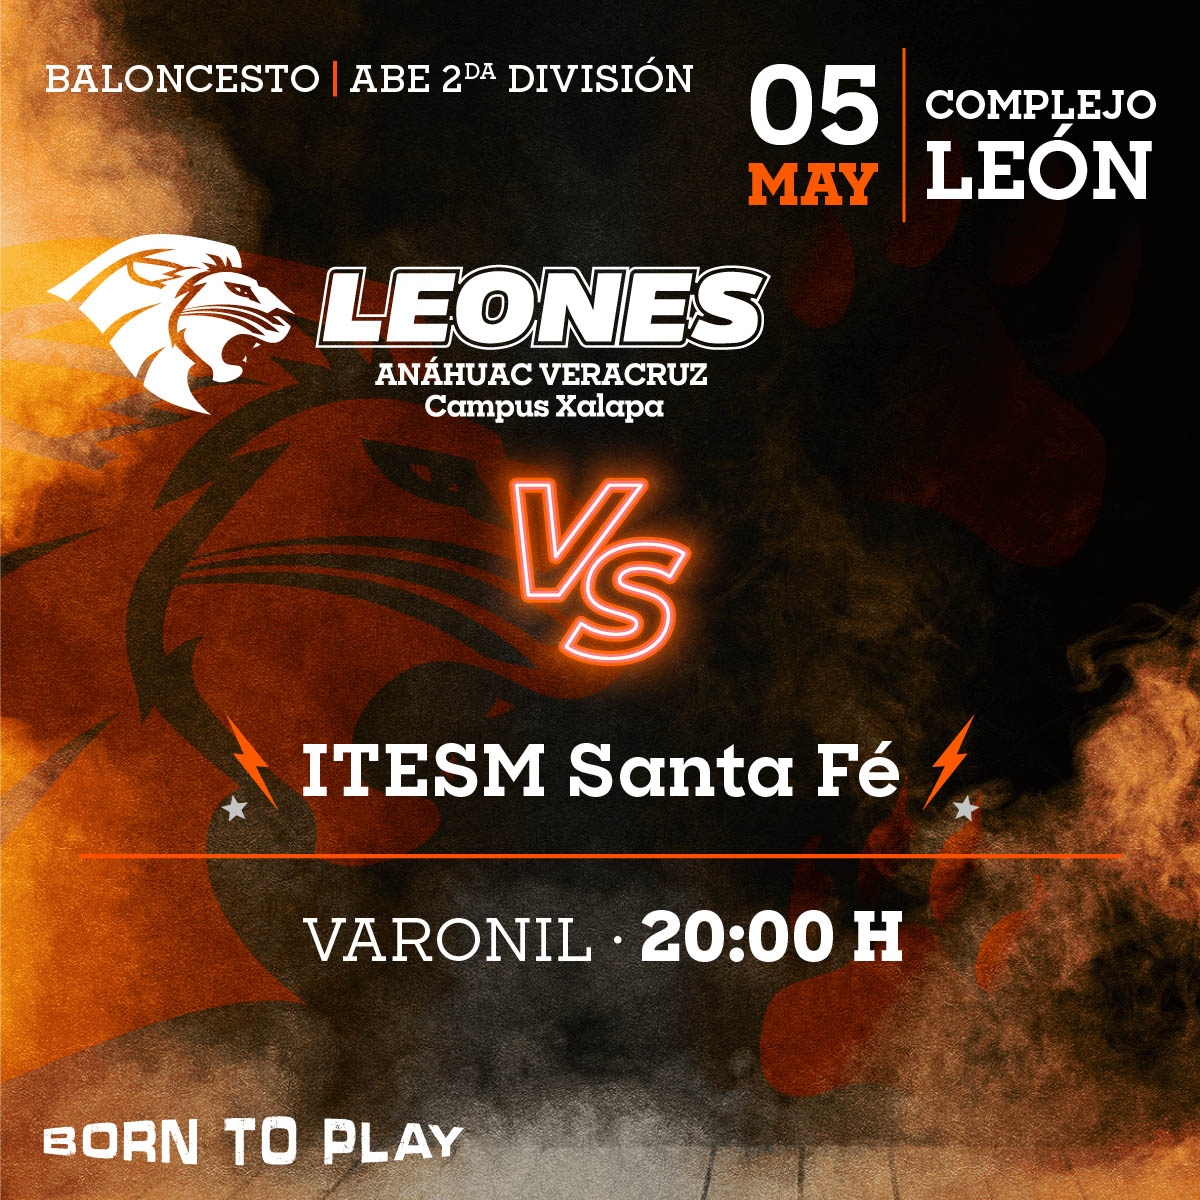 Baloncesto Varonil ABE: Leones vs ITESM Santa Fe